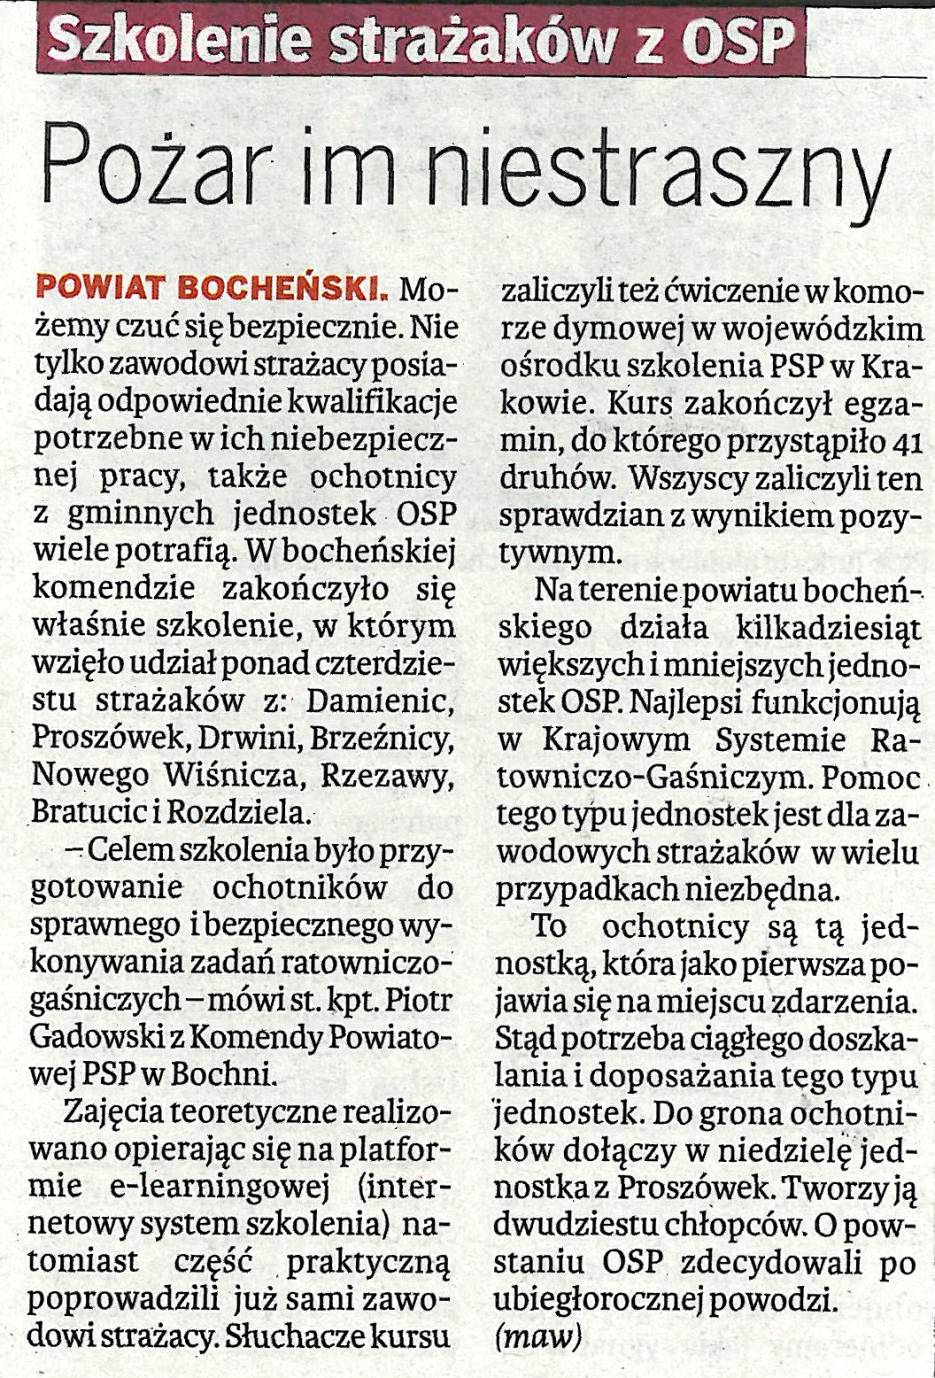 Pożar im niestraszny - Gazeta Krakowska - 18.03.2011